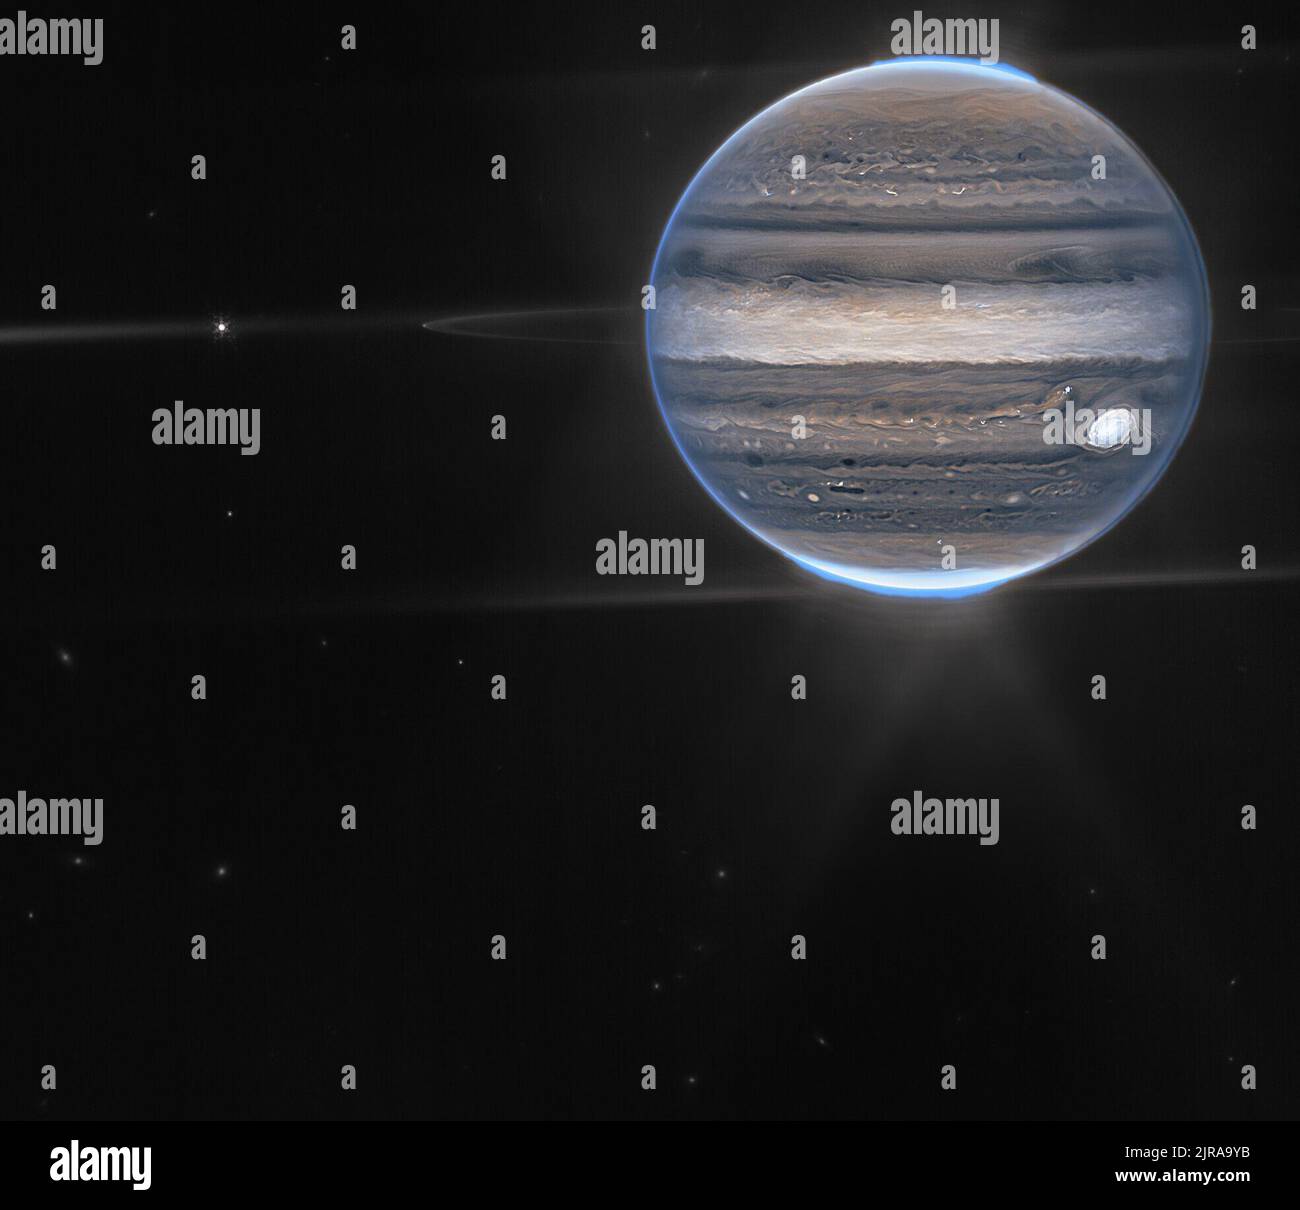 Description de l'image : une vue de champ large affiche Jupiter dans le quadrant supérieur droit. Les bandes horizontales tourbillonnantes de la planète sont rendues dans les bleus, les bruns et la crème. Auroras bleu électrique au-dessus des pôles nord et sud de Jupiter. Une lueur blanche émane des aurores. Le long de l'équateur de la planète, les anneaux brillent dans un blanc pâle. Ces anneaux sont un million de fois plus faibles que la planète elle-même! À l'extrémité gauche des anneaux, une lune apparaît sous la forme d'un petit point blanc. Légèrement plus à gauche, une autre lune brille avec de minuscules pics de diffraction blancs. Le reste de l'image est la noirceur de sp Banque D'Images